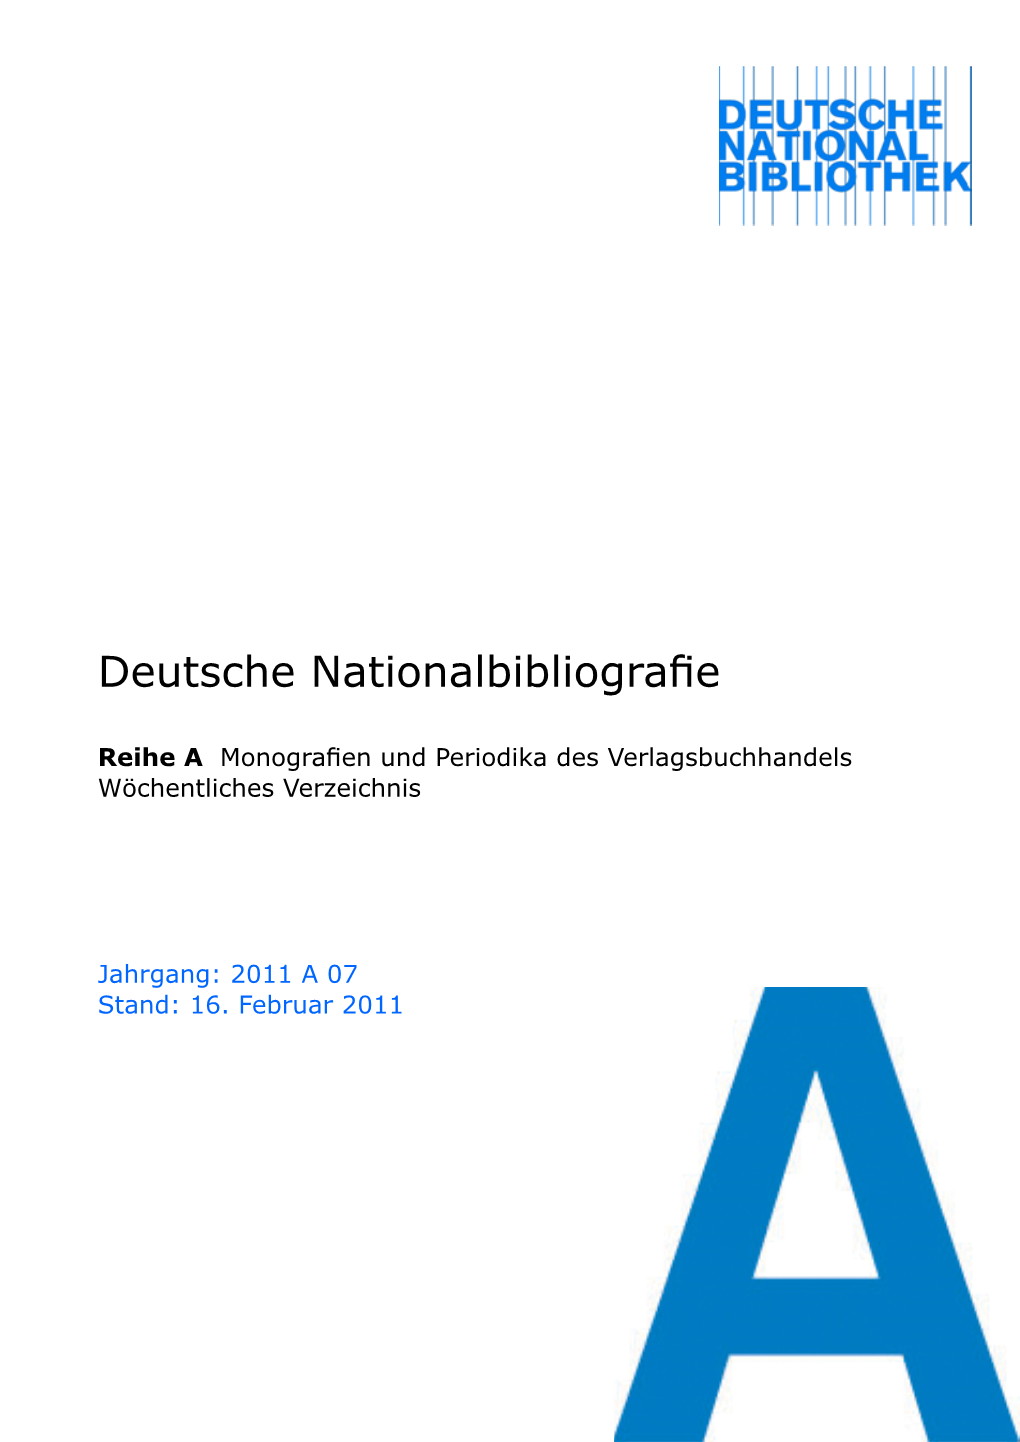 Deutsche Nationalbibliografie 2011 a 07